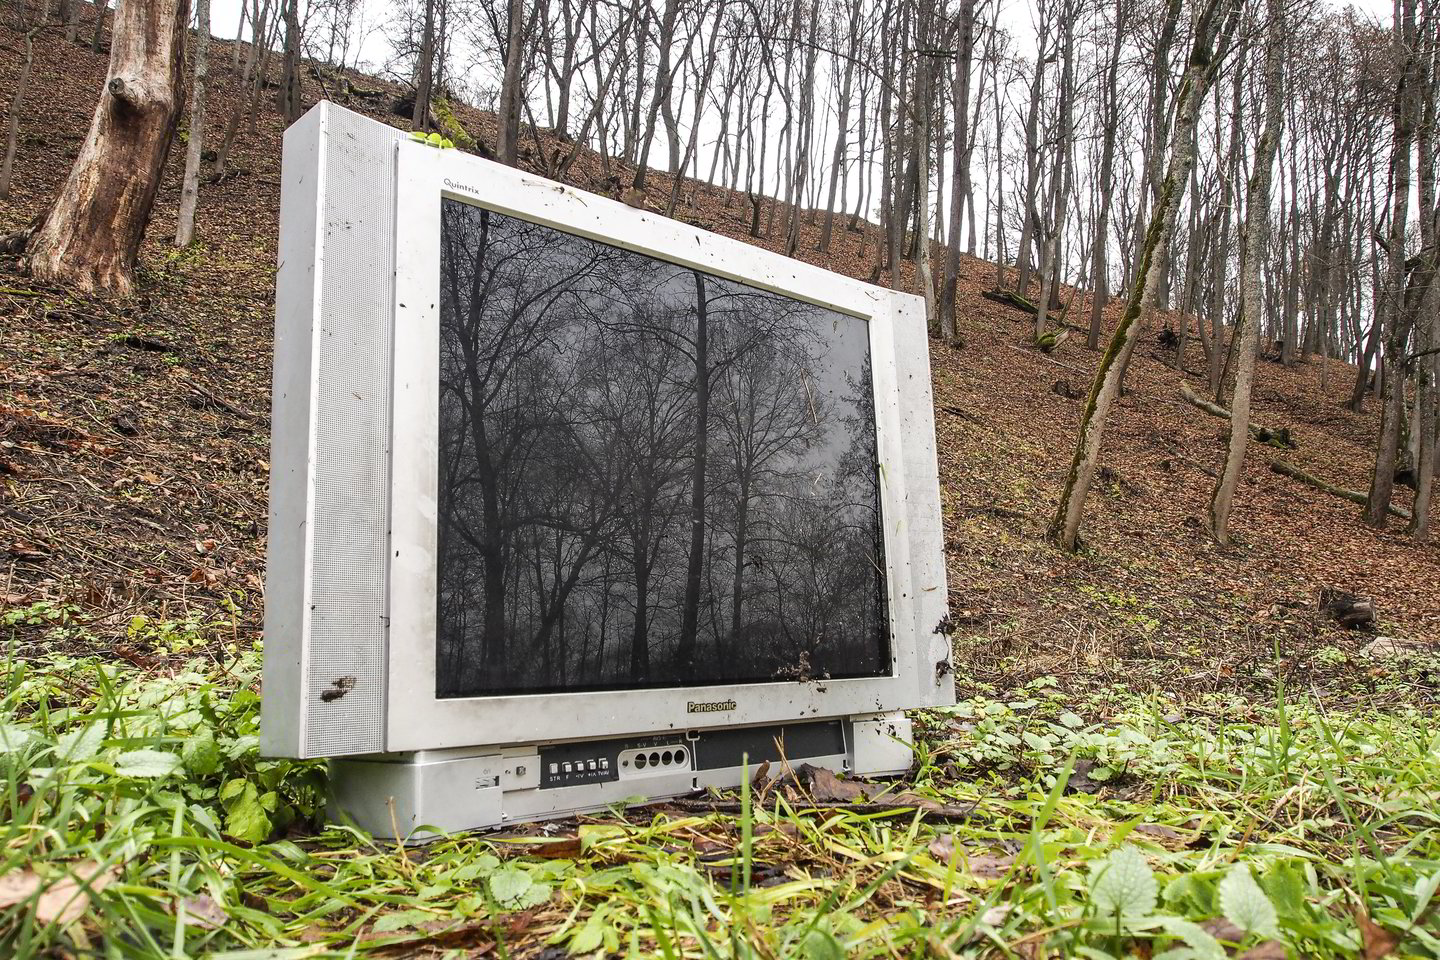  Vieni televizorius sudaužo, kiti išveža į mišką. <br> V.Ščiavinsko asociatyvi nuotr. 